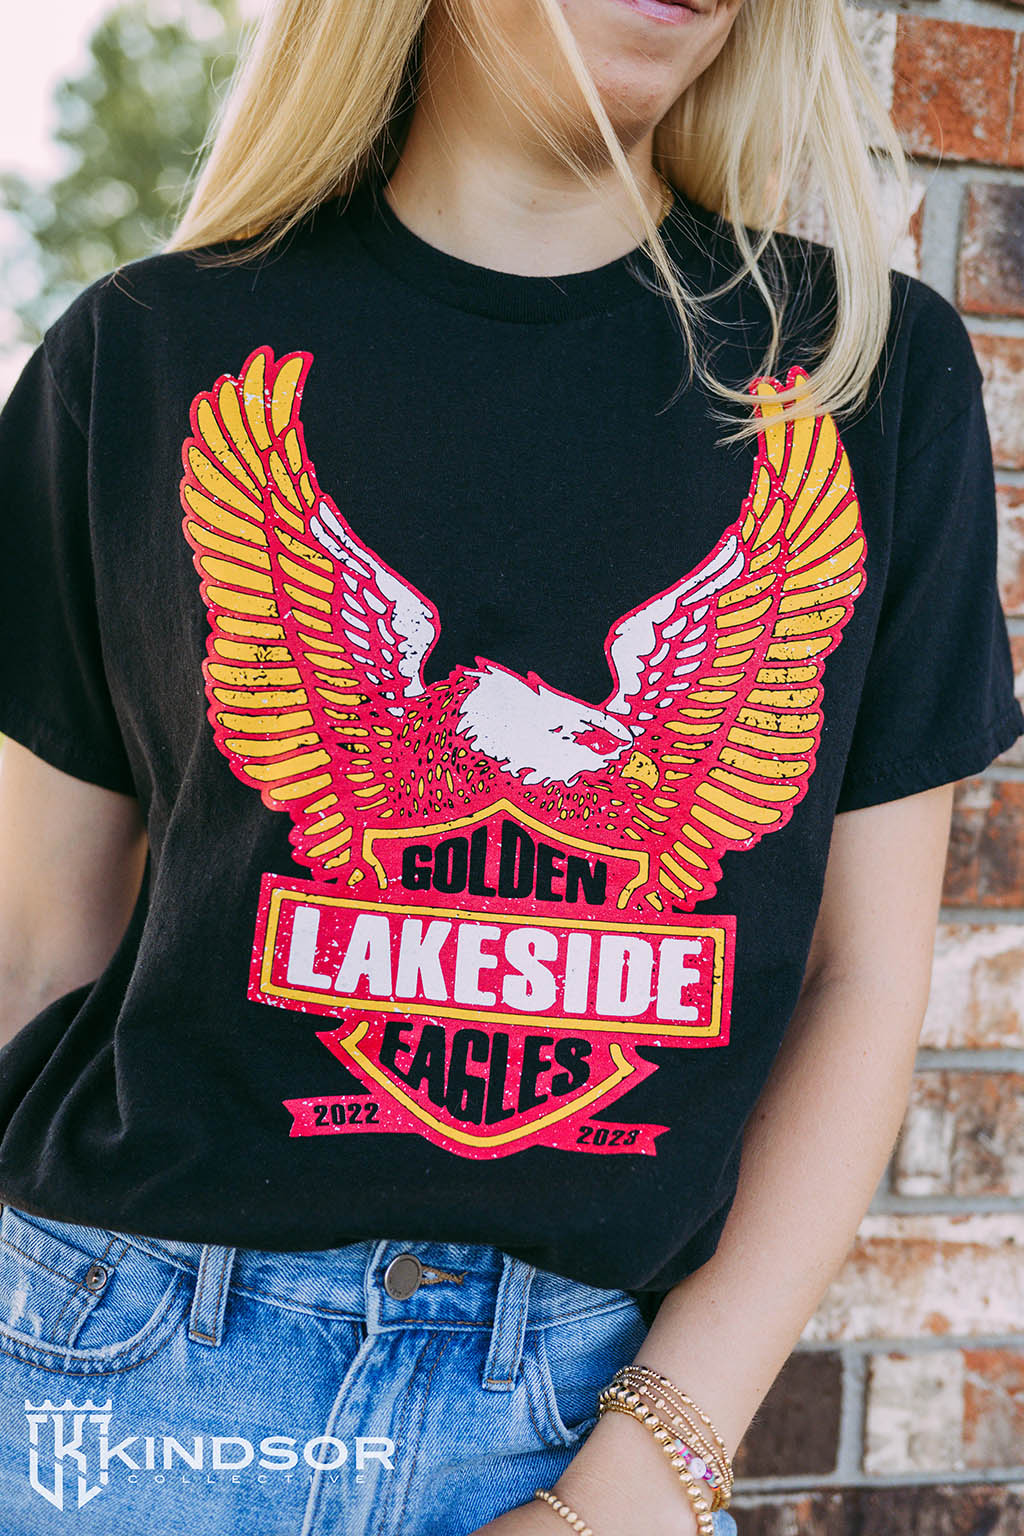 Lakeside Golden Eagles Tshirt